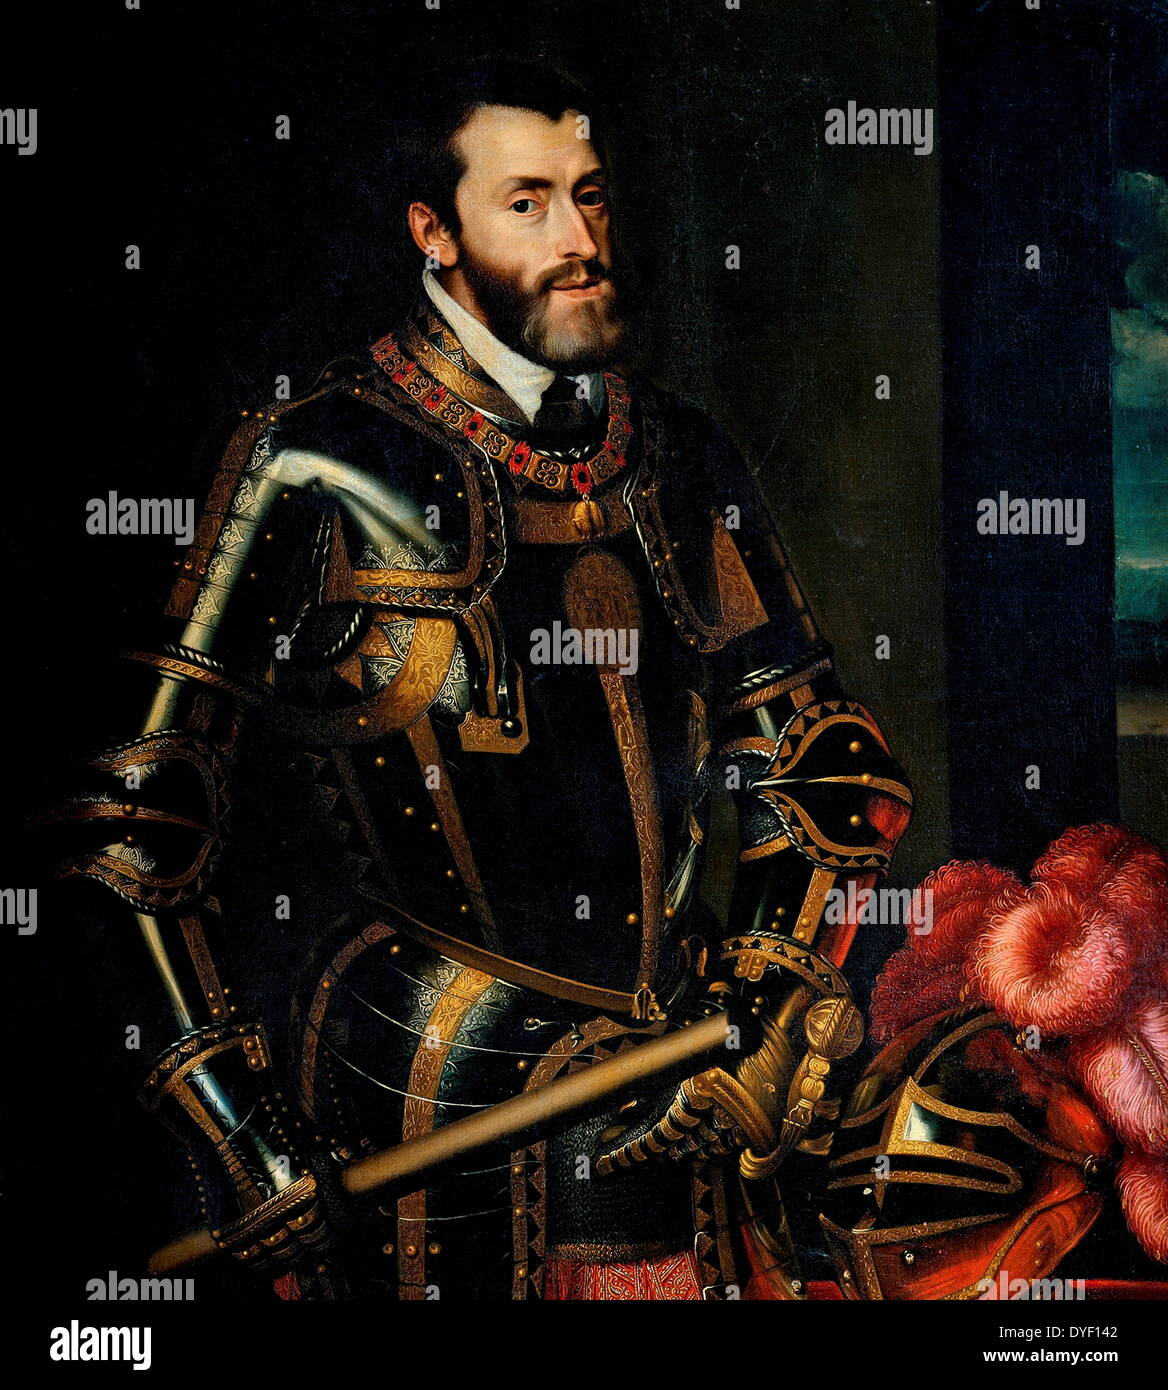 La pintura de Carlos V (también conocido como Carlos I, Karel V, Carlos V, Carlo V y Charles Quint). Nacido el 24 de febrero de 1500, murió el 21 de septiembre de 1558 en el Monasterio de Yuste, España. Era gobernante del Sacro Imperio Romano desde 1519 y el imperio español (como Carlos I) desde 1516 hasta su jubilación voluntaria y abdicó en 1556. Su regla era entonces pasó a su hermano Fernando I y su hijo Felipe II. Óleo sobre lienzo. Foto de stock